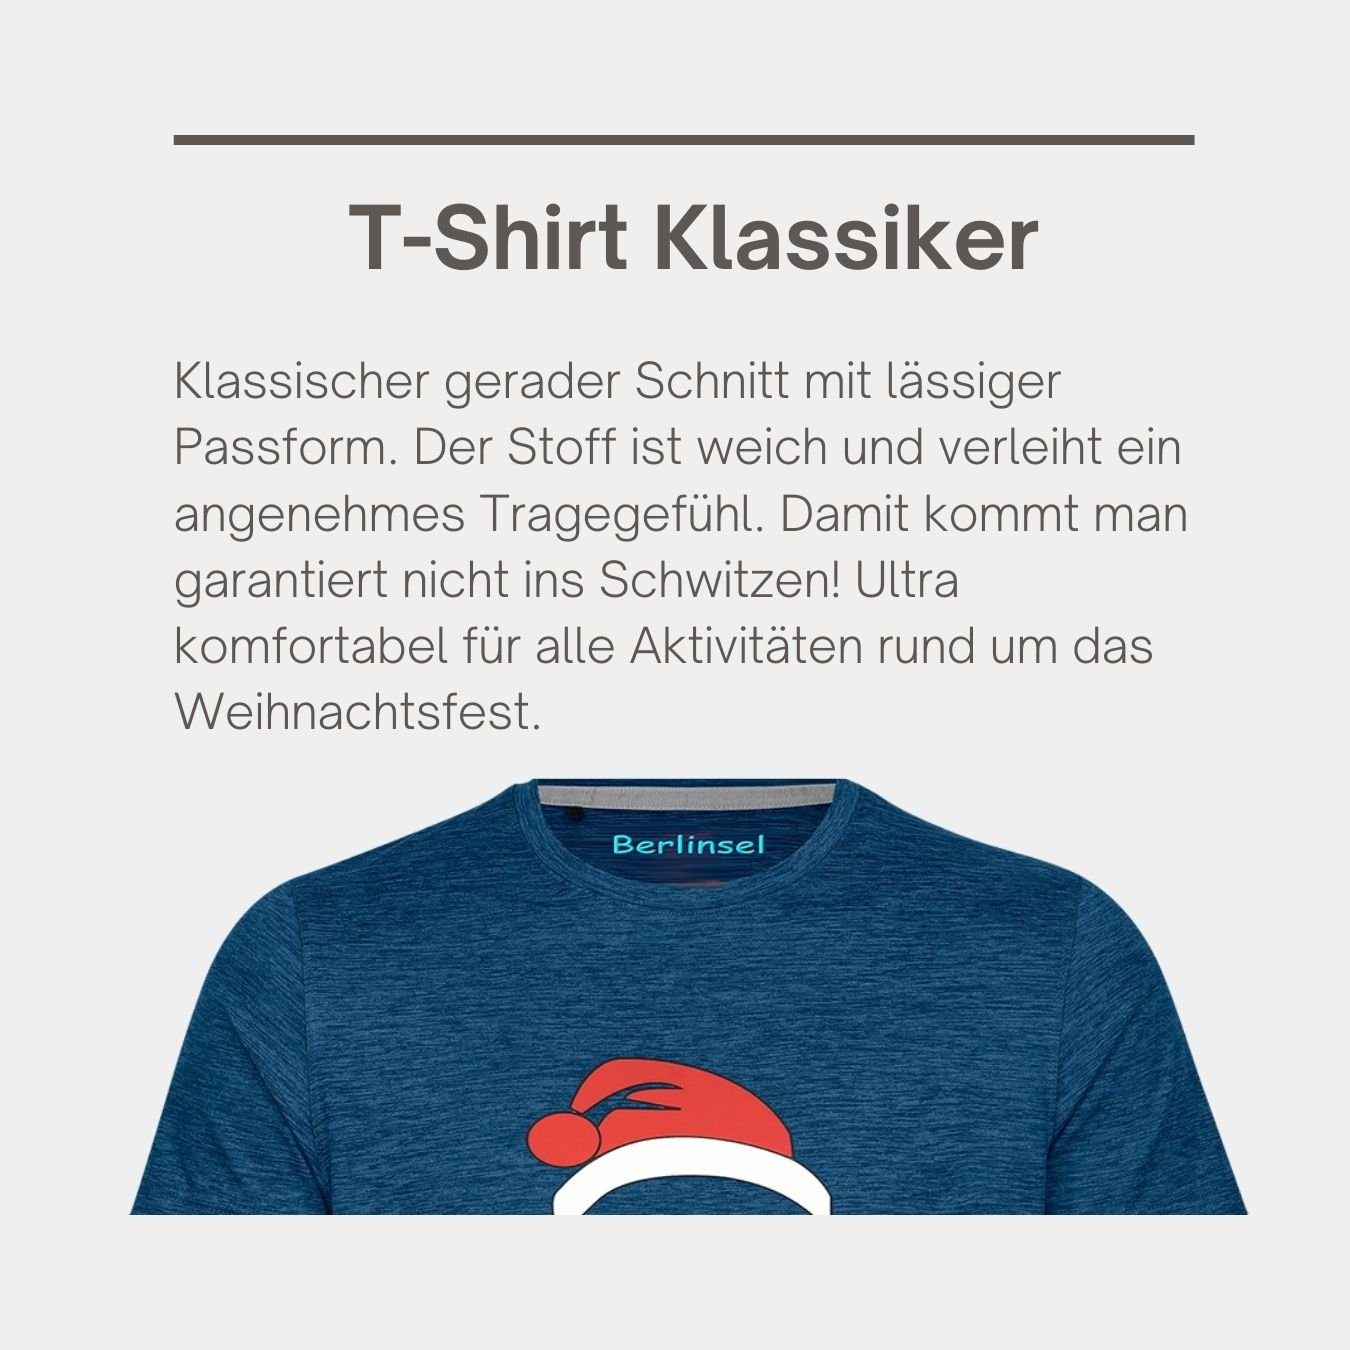 Berlinsel T-Shirt Printshirt Weihnachtsgeschenk, Weihnachtsoutfit Männer Weihnachtsshirt Weihnachtsfeier, Weihnachtsfoto weinrot Herren